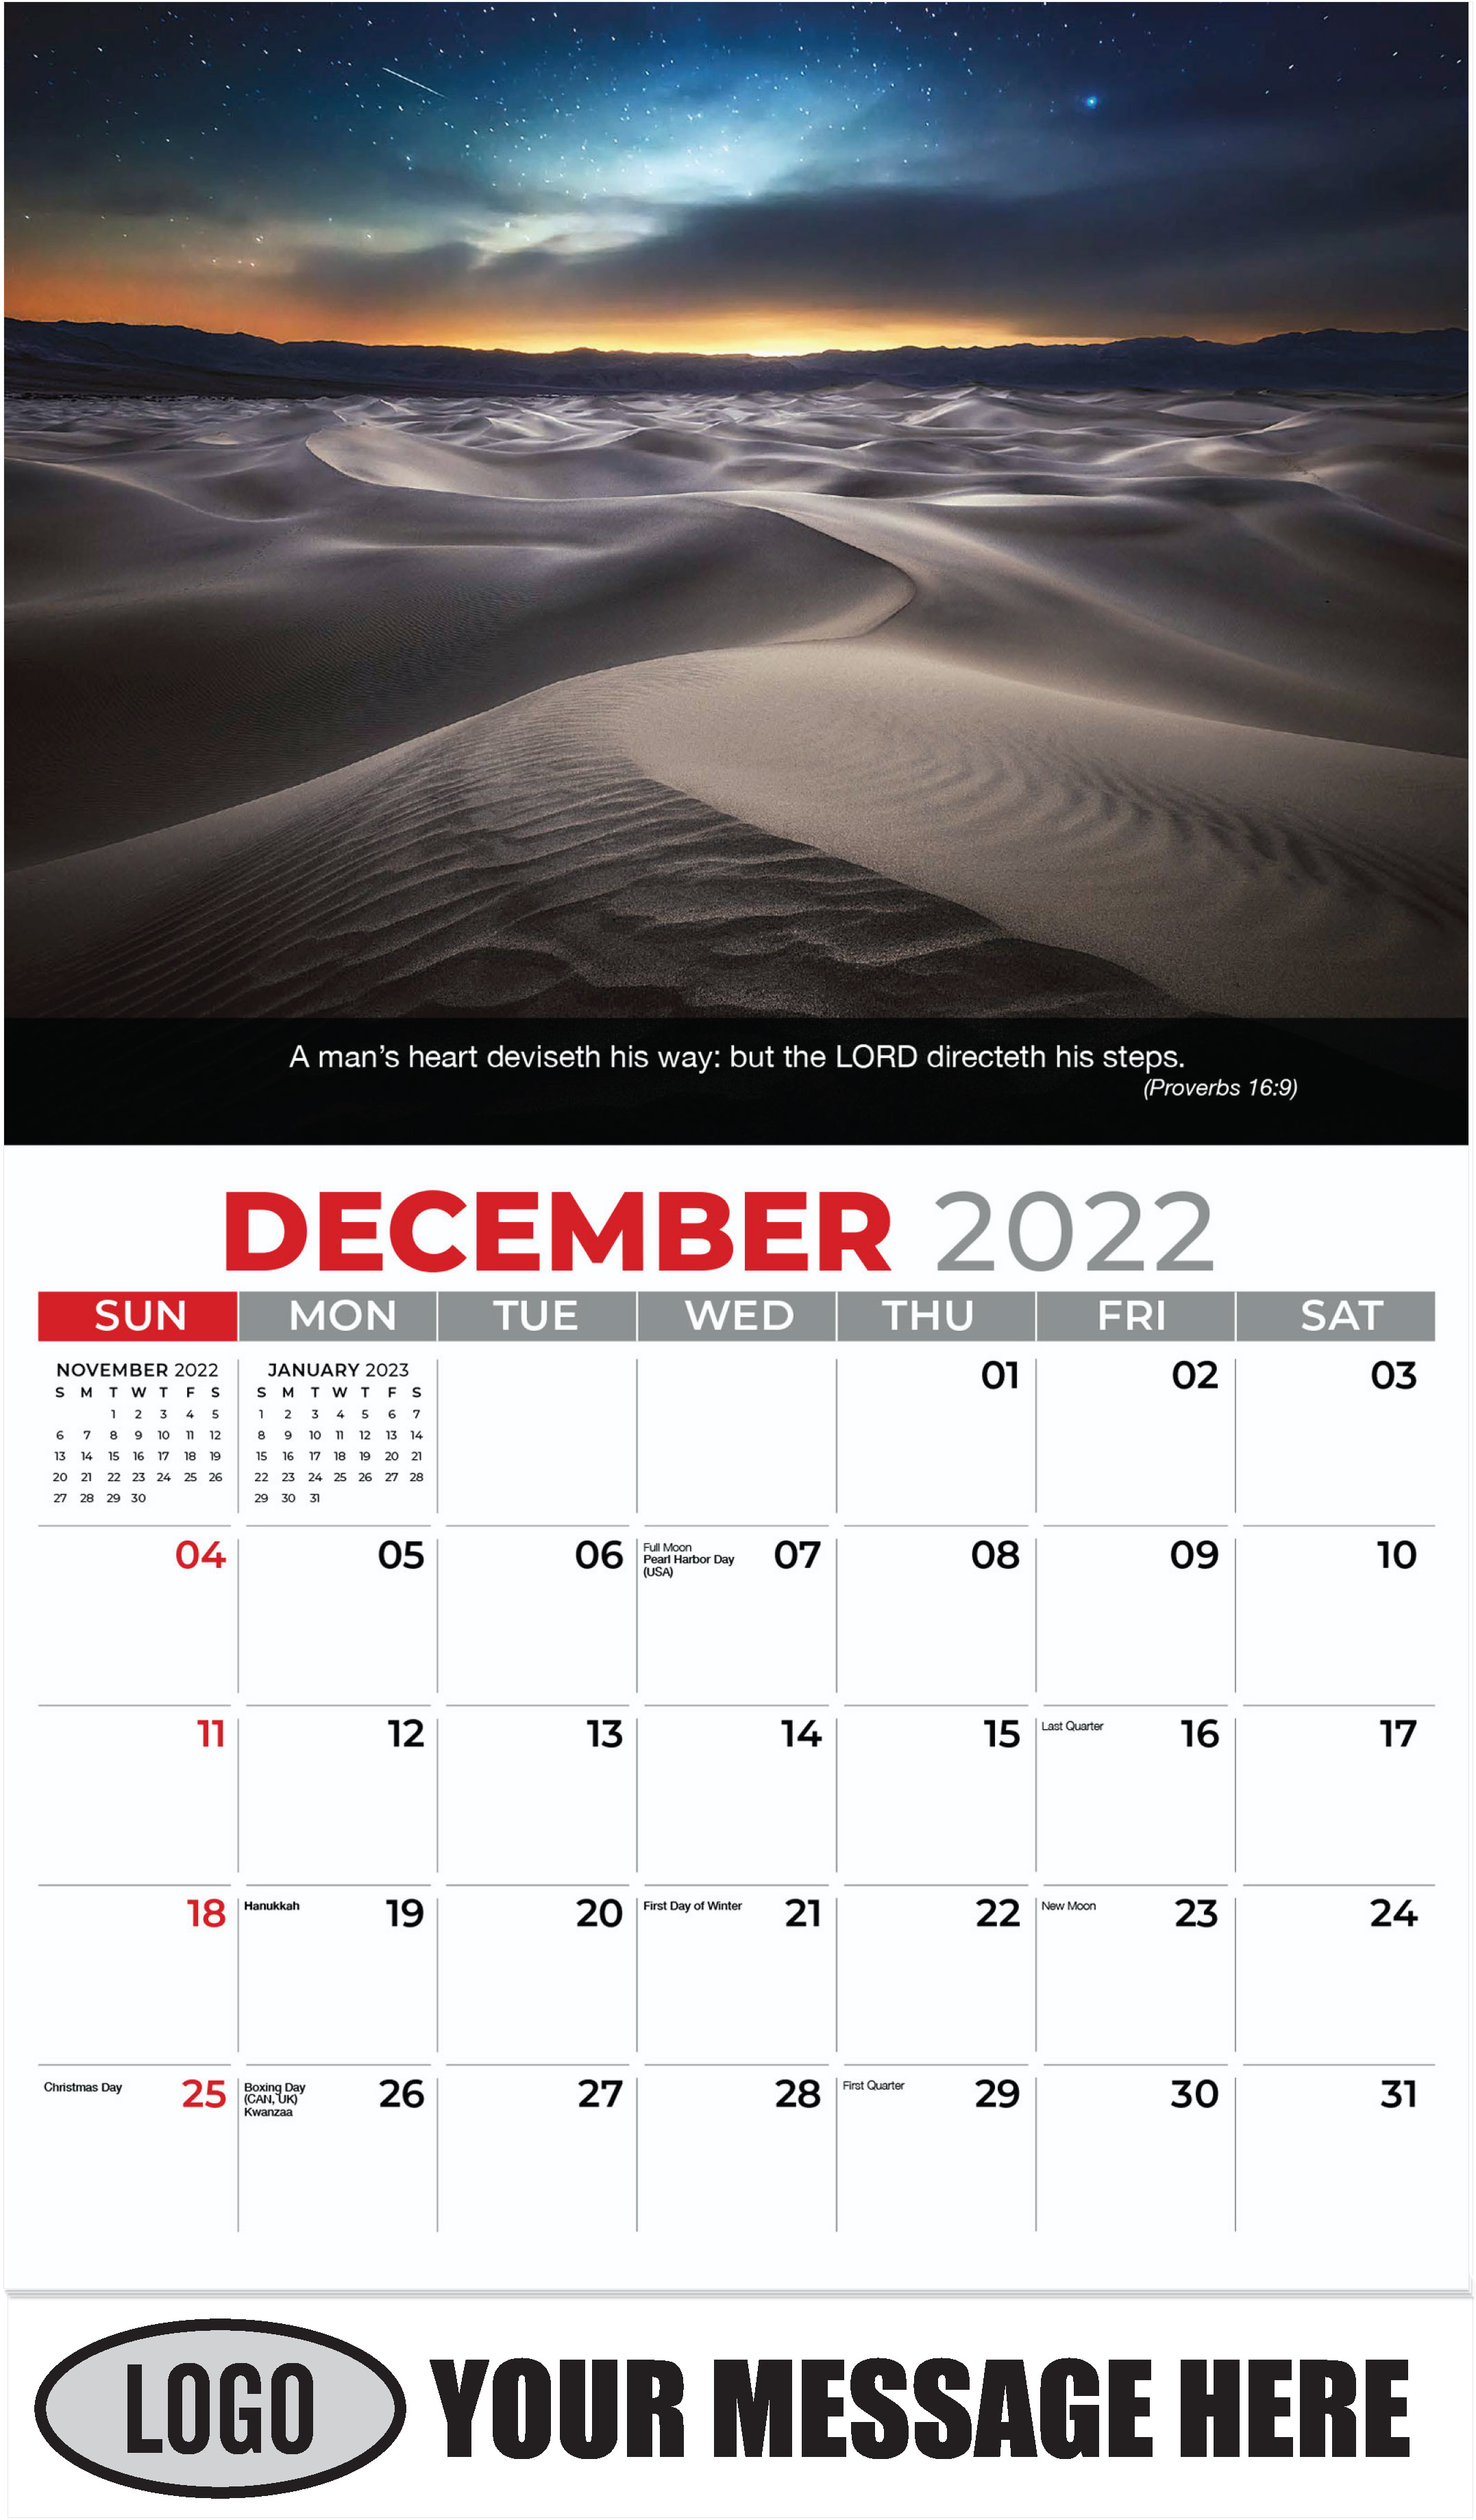 Mesquite Flat Sand Dunes, Death Valley National Park - December 2022 - Faith Passages 2023 Promotional Calendar